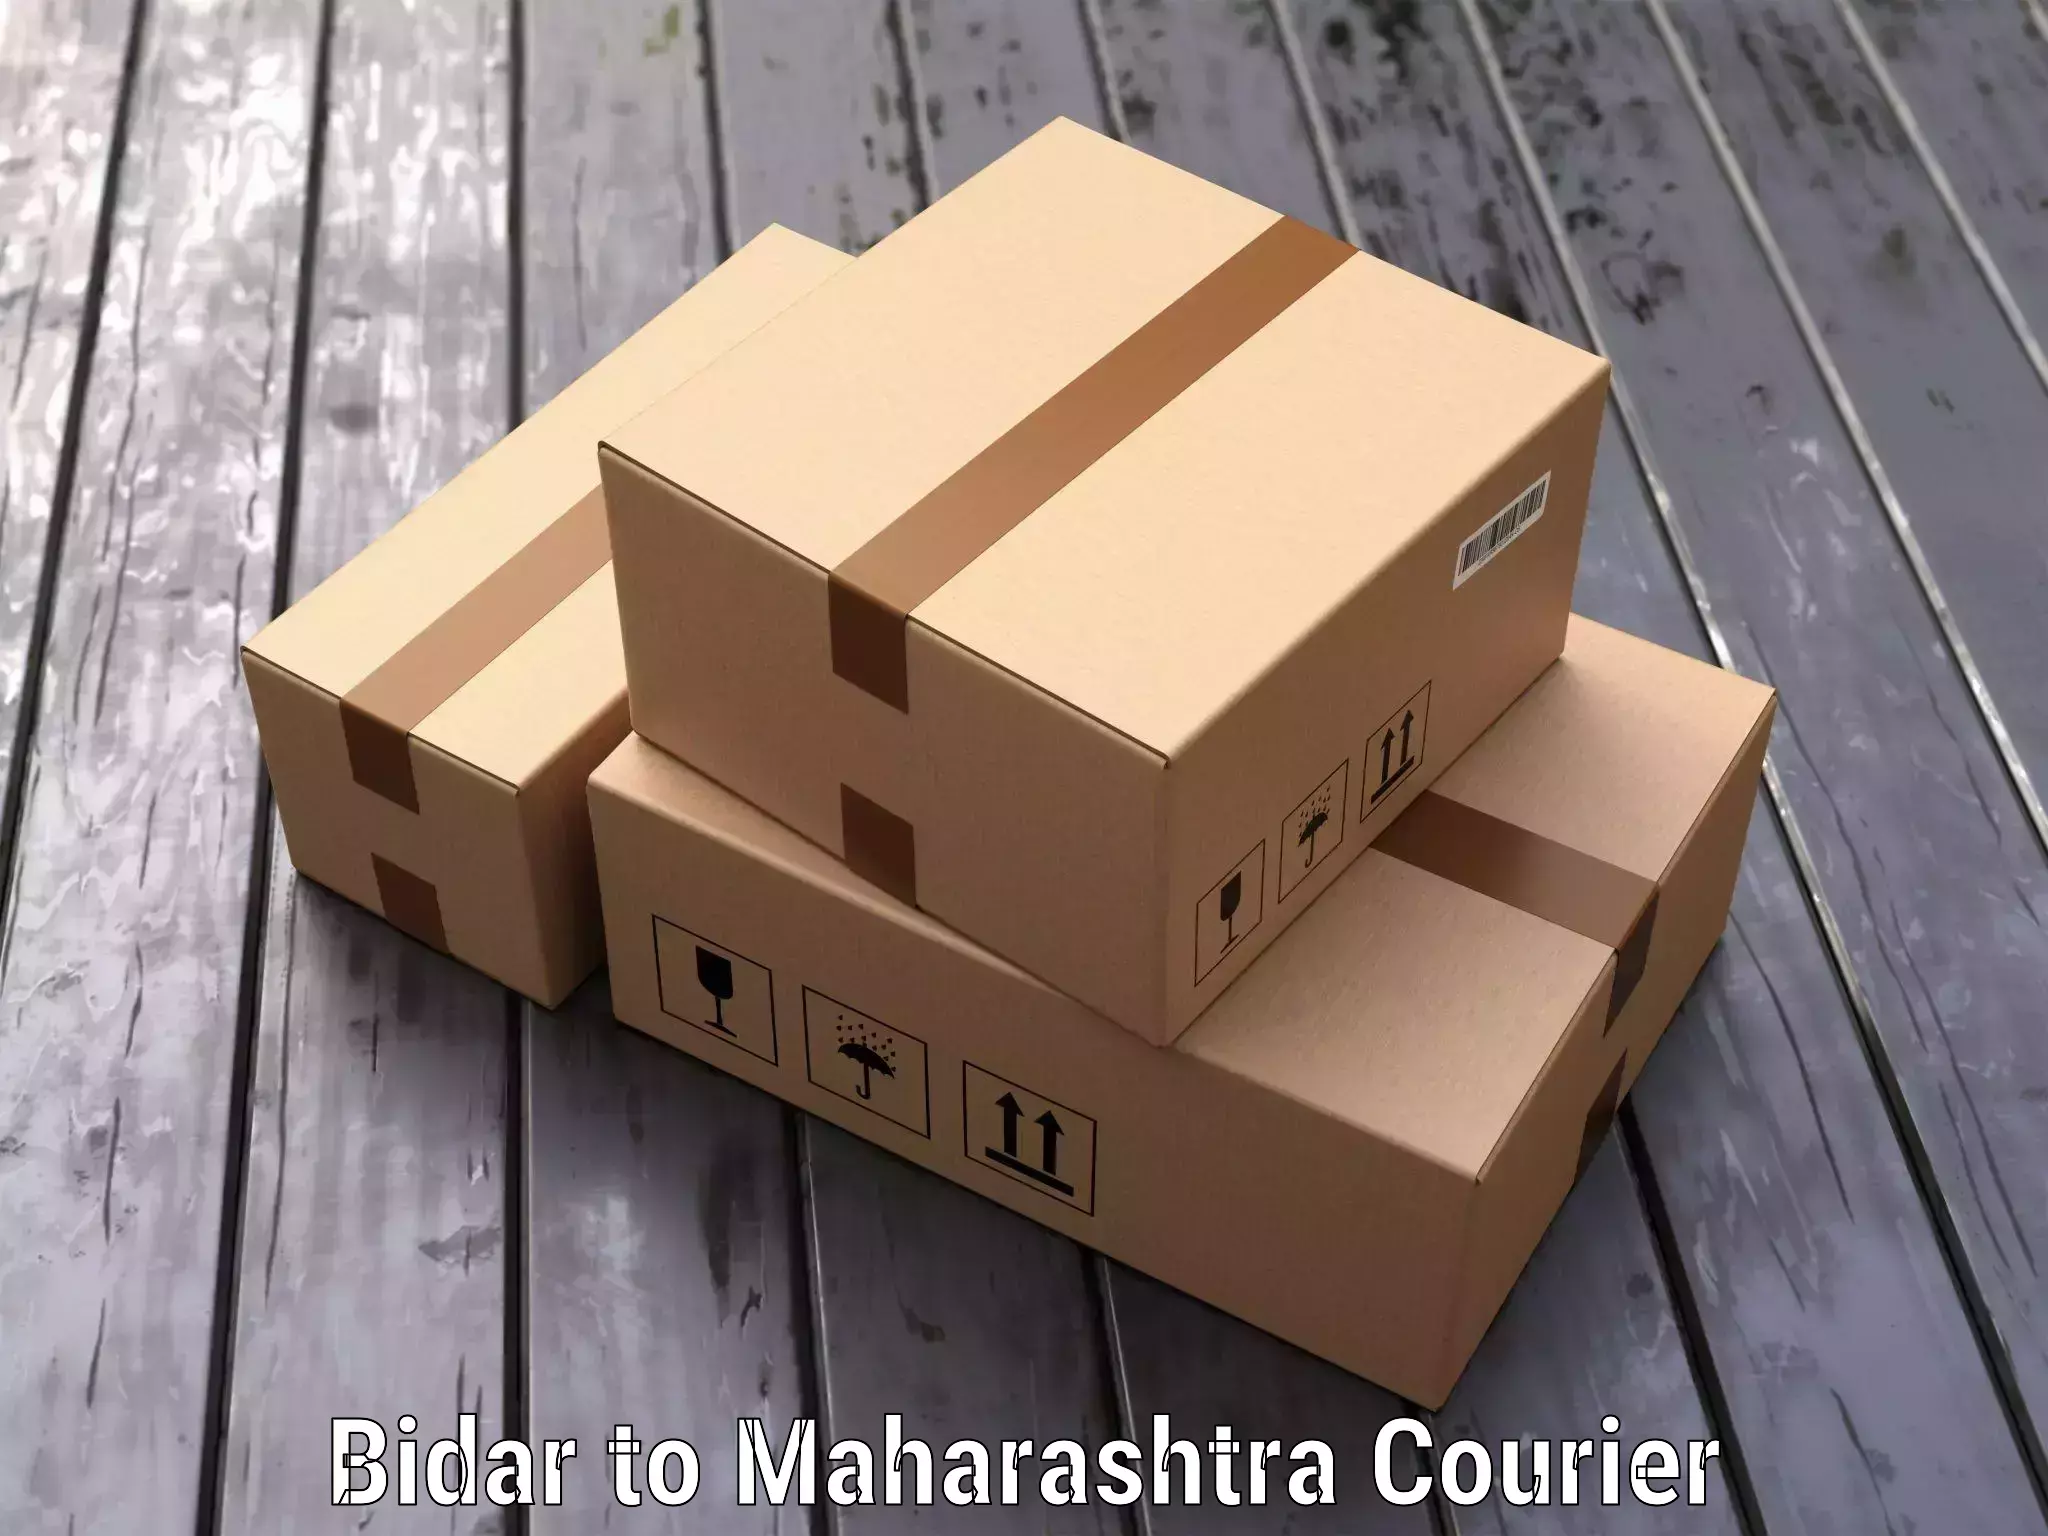 Luggage transport company Bidar to Maharashtra